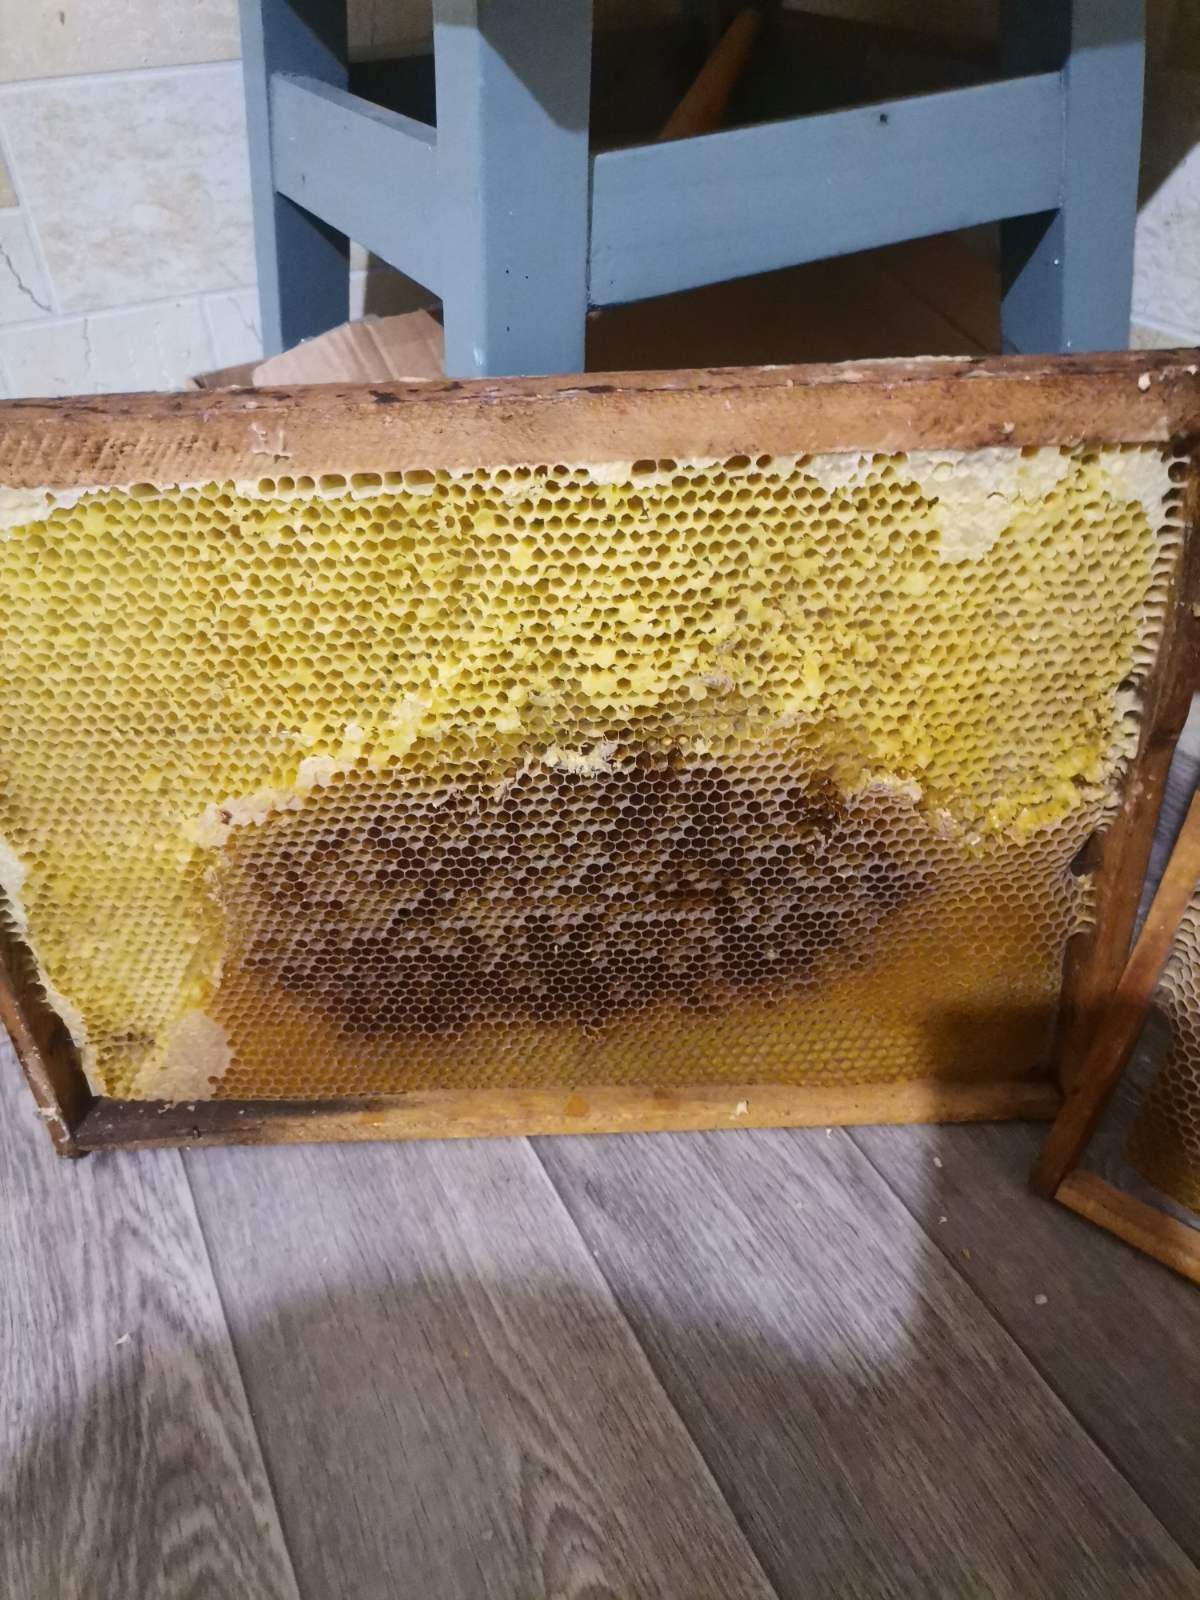 Продам сушь пчелиную